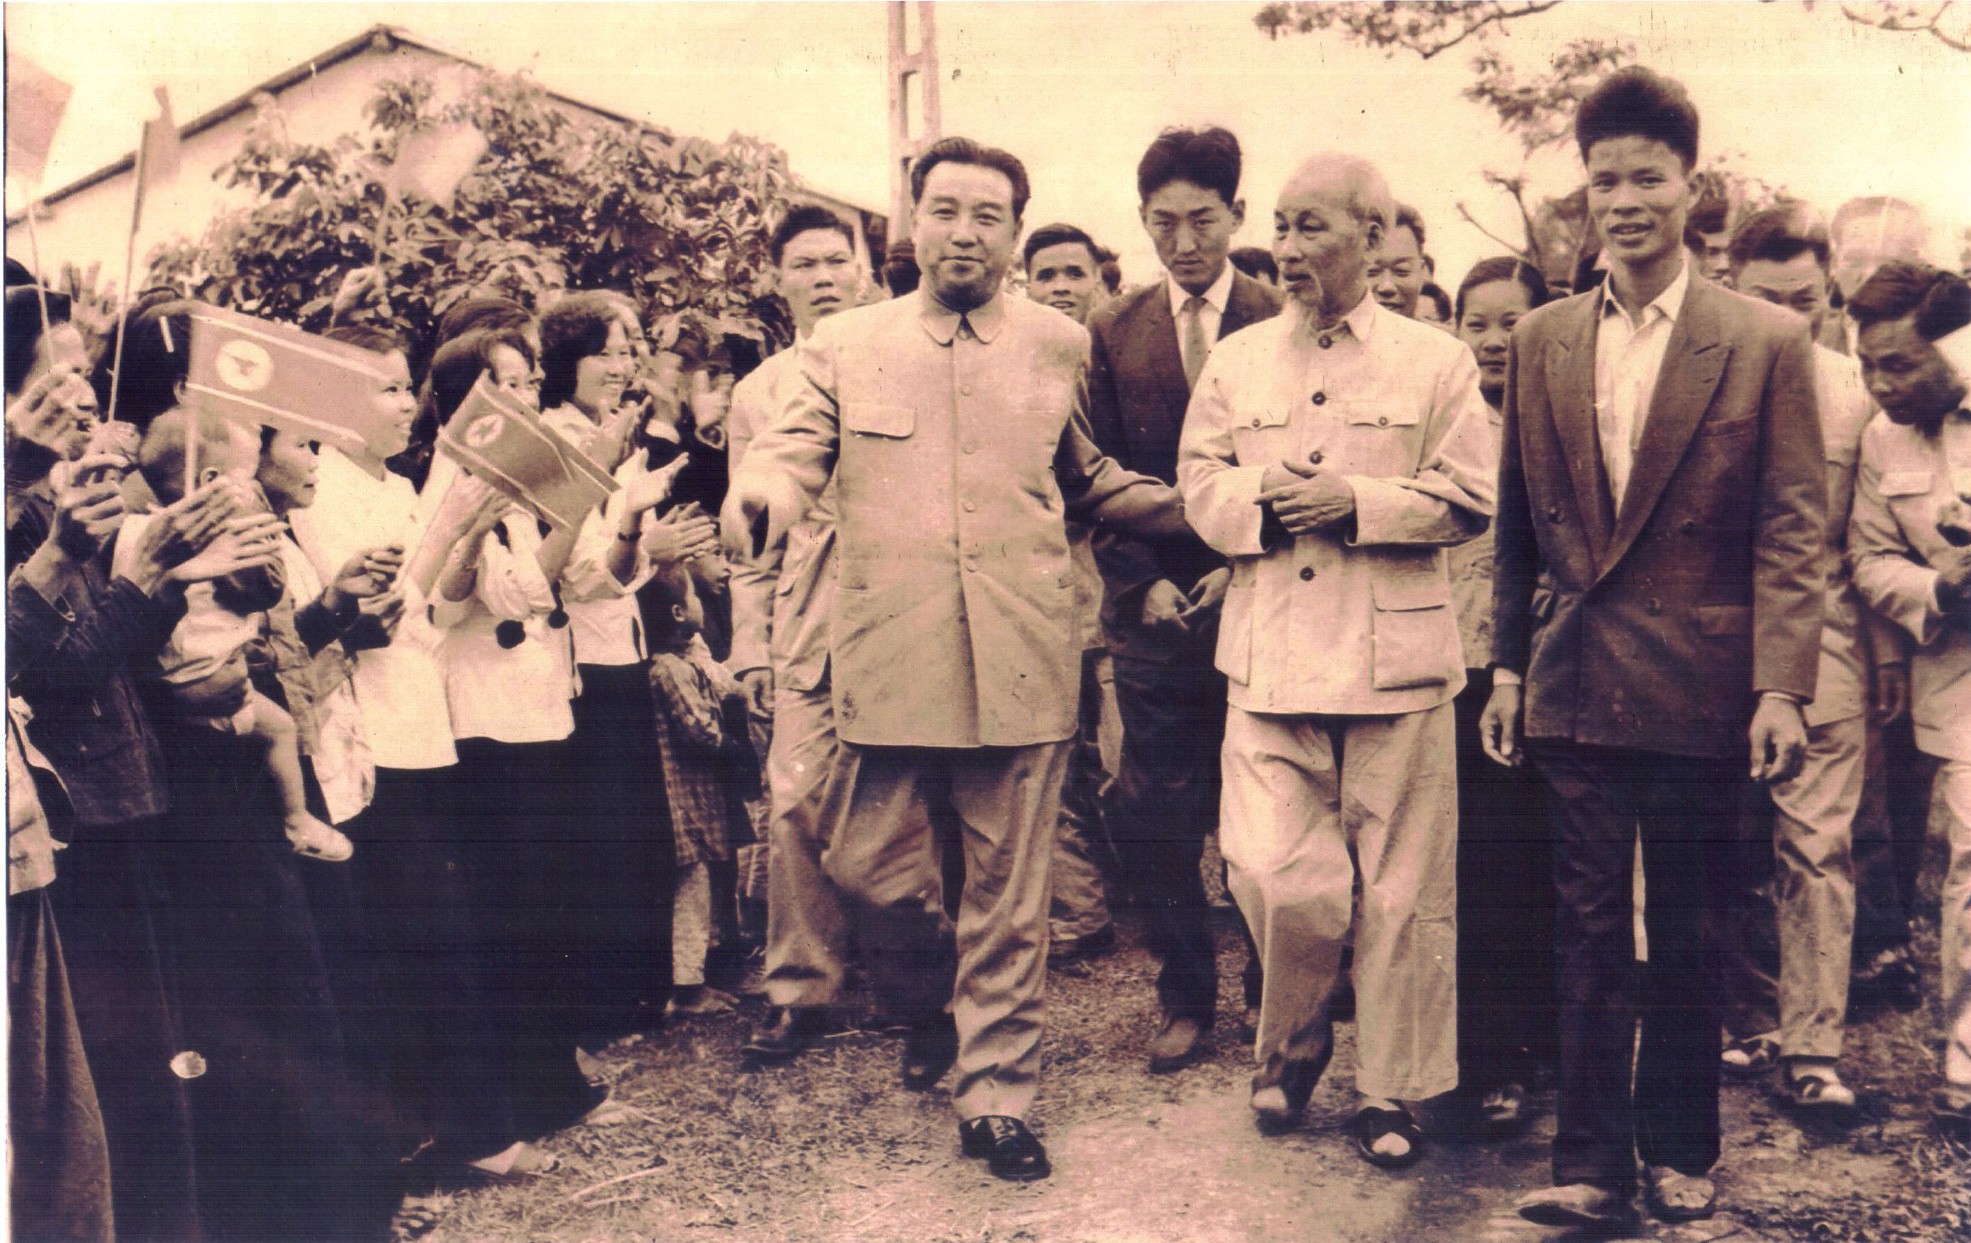 Được chụp bởi nhiếp ảnh gia nổi tiếng Phạm Văn Đức, bức ảnh Chủ tịch Kim Nhật Thành là một trong những tác phẩm nghệ thuật đáng để ngắm nhìn, tôn vinh những đóng góp vĩ đại của người anh hùng này cho đất nước Việt Nam.